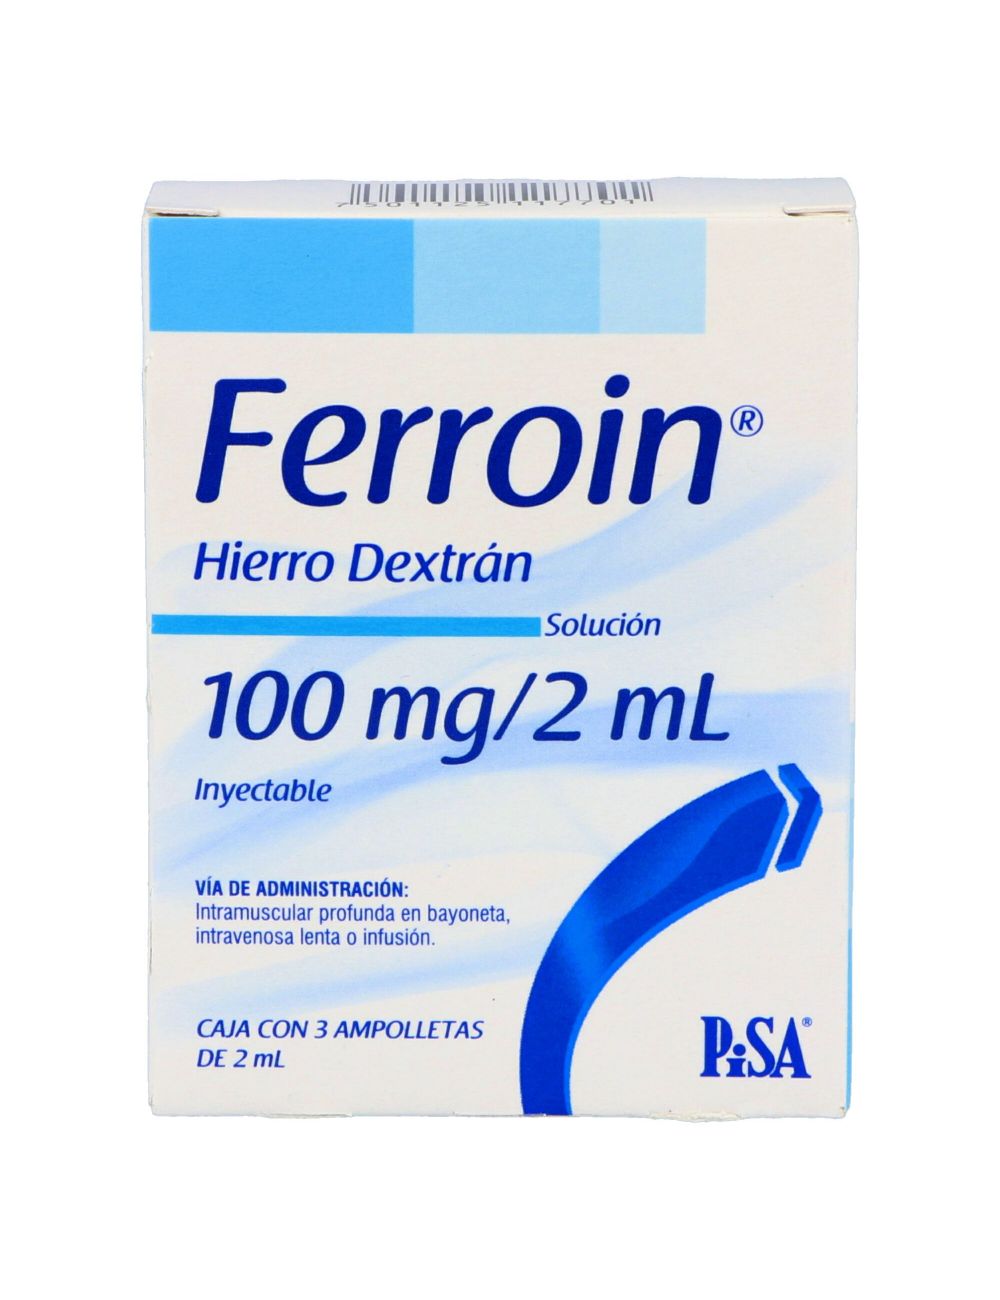 Precio Ferroin solución 100 mg/2 ml 3 ampolletas | Farmalisto MX